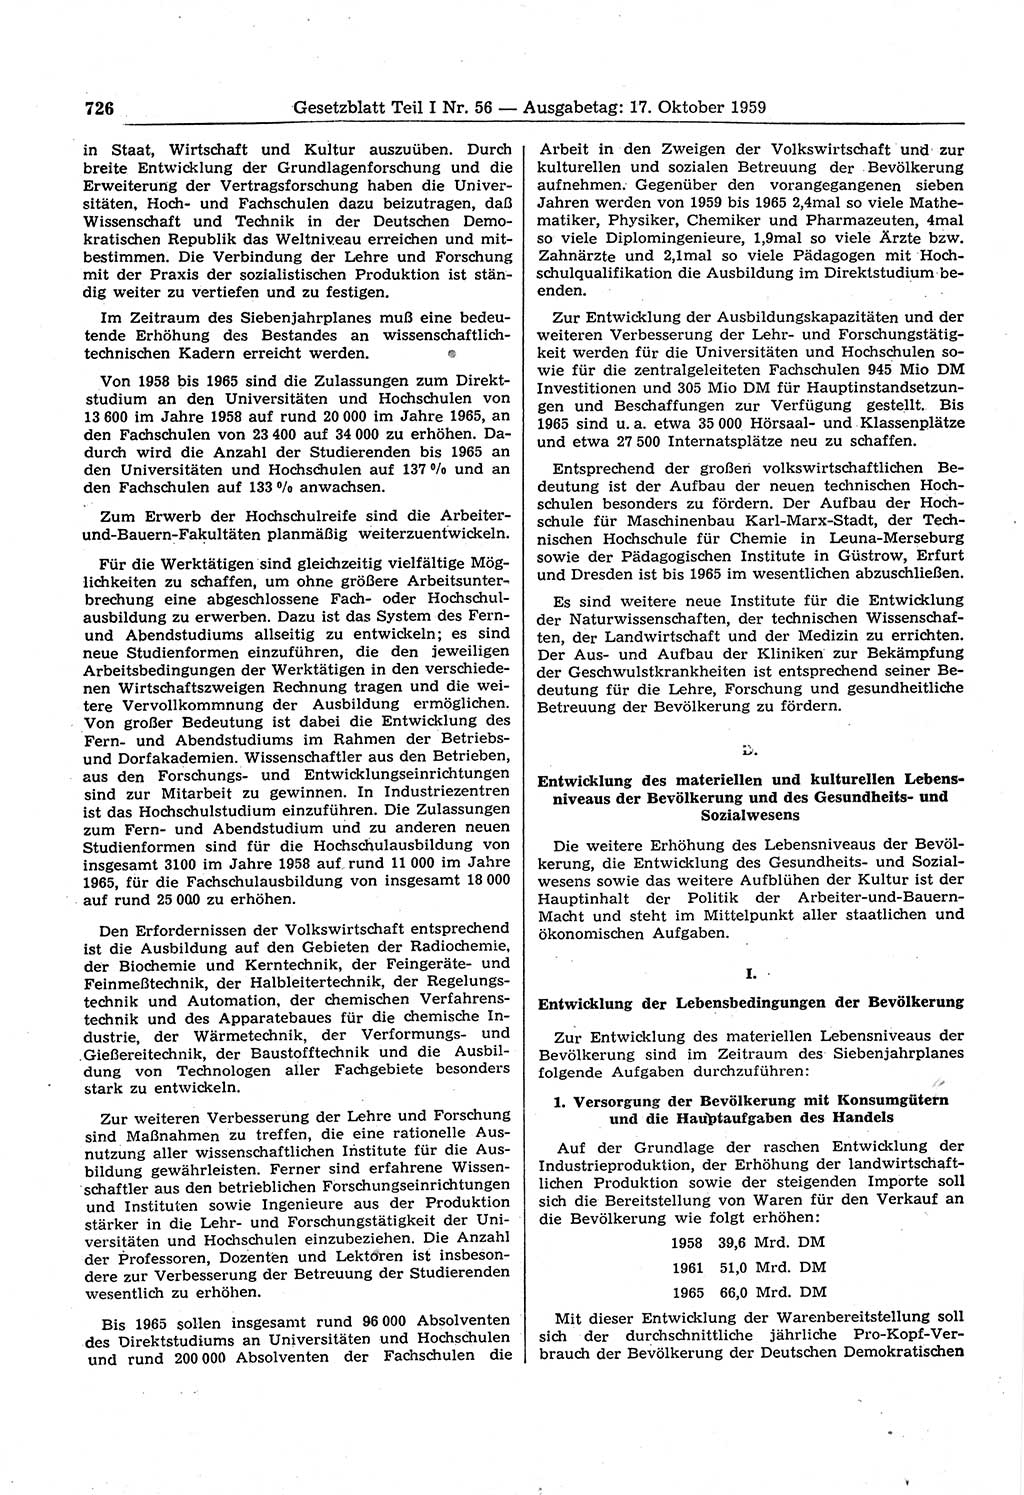 Gesetzblatt (GBl.) der Deutschen Demokratischen Republik (DDR) Teil Ⅰ 1959, Seite 726 (GBl. DDR Ⅰ 1959, S. 726)